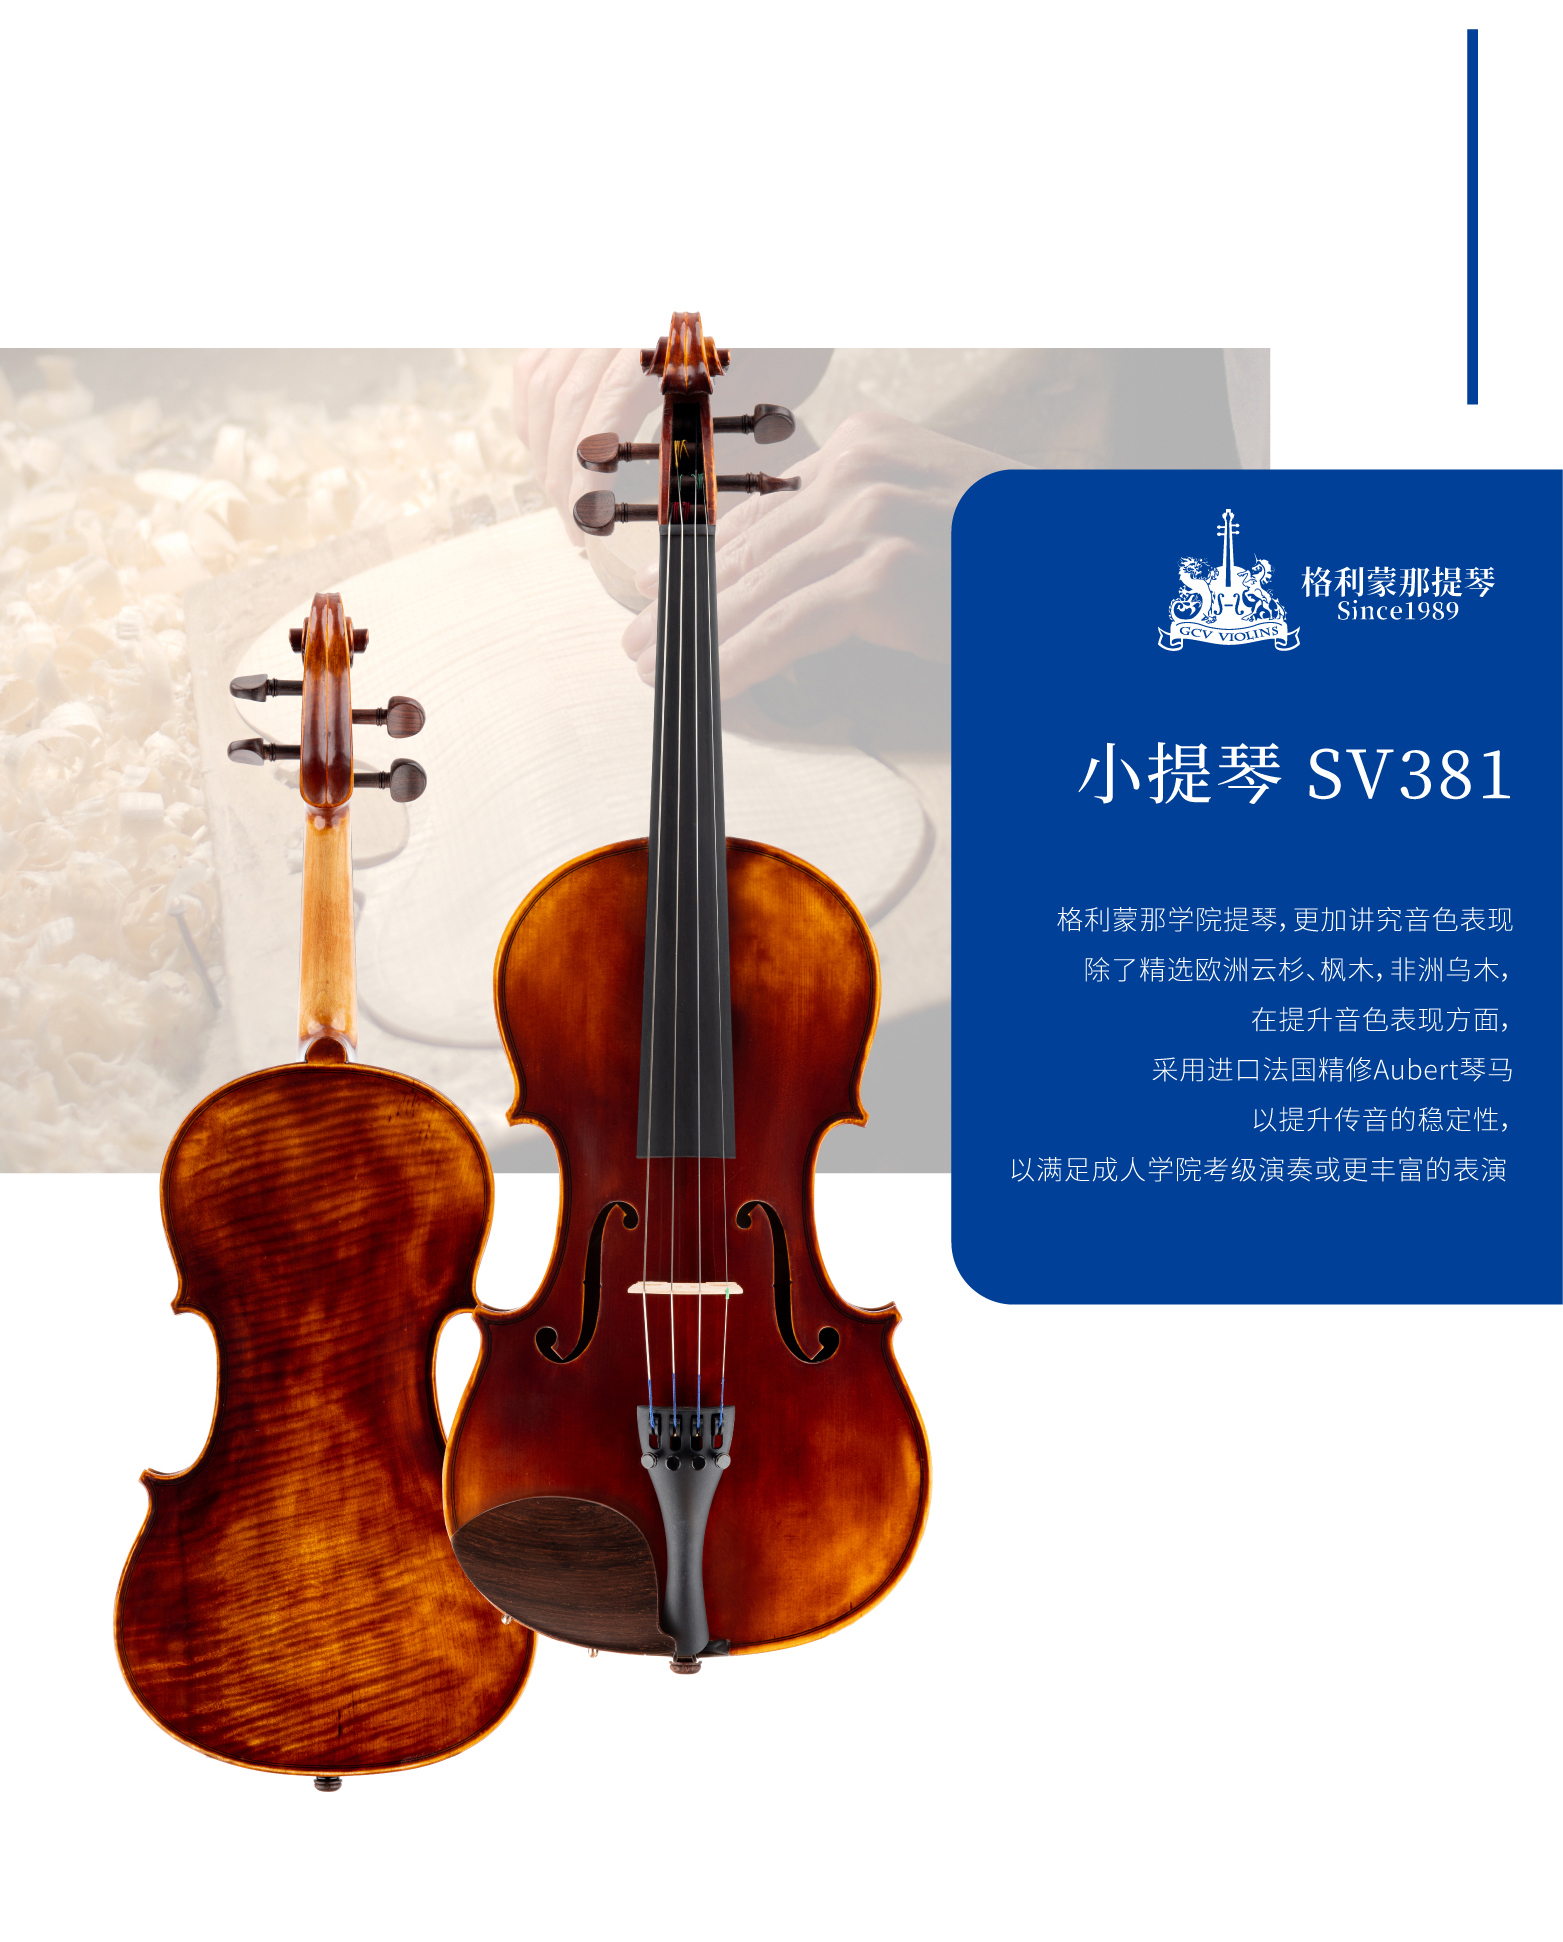 熙珑乐器专营店-详情-v1-2_SV381小提琴_复制_PC-副本-2_02.jpg